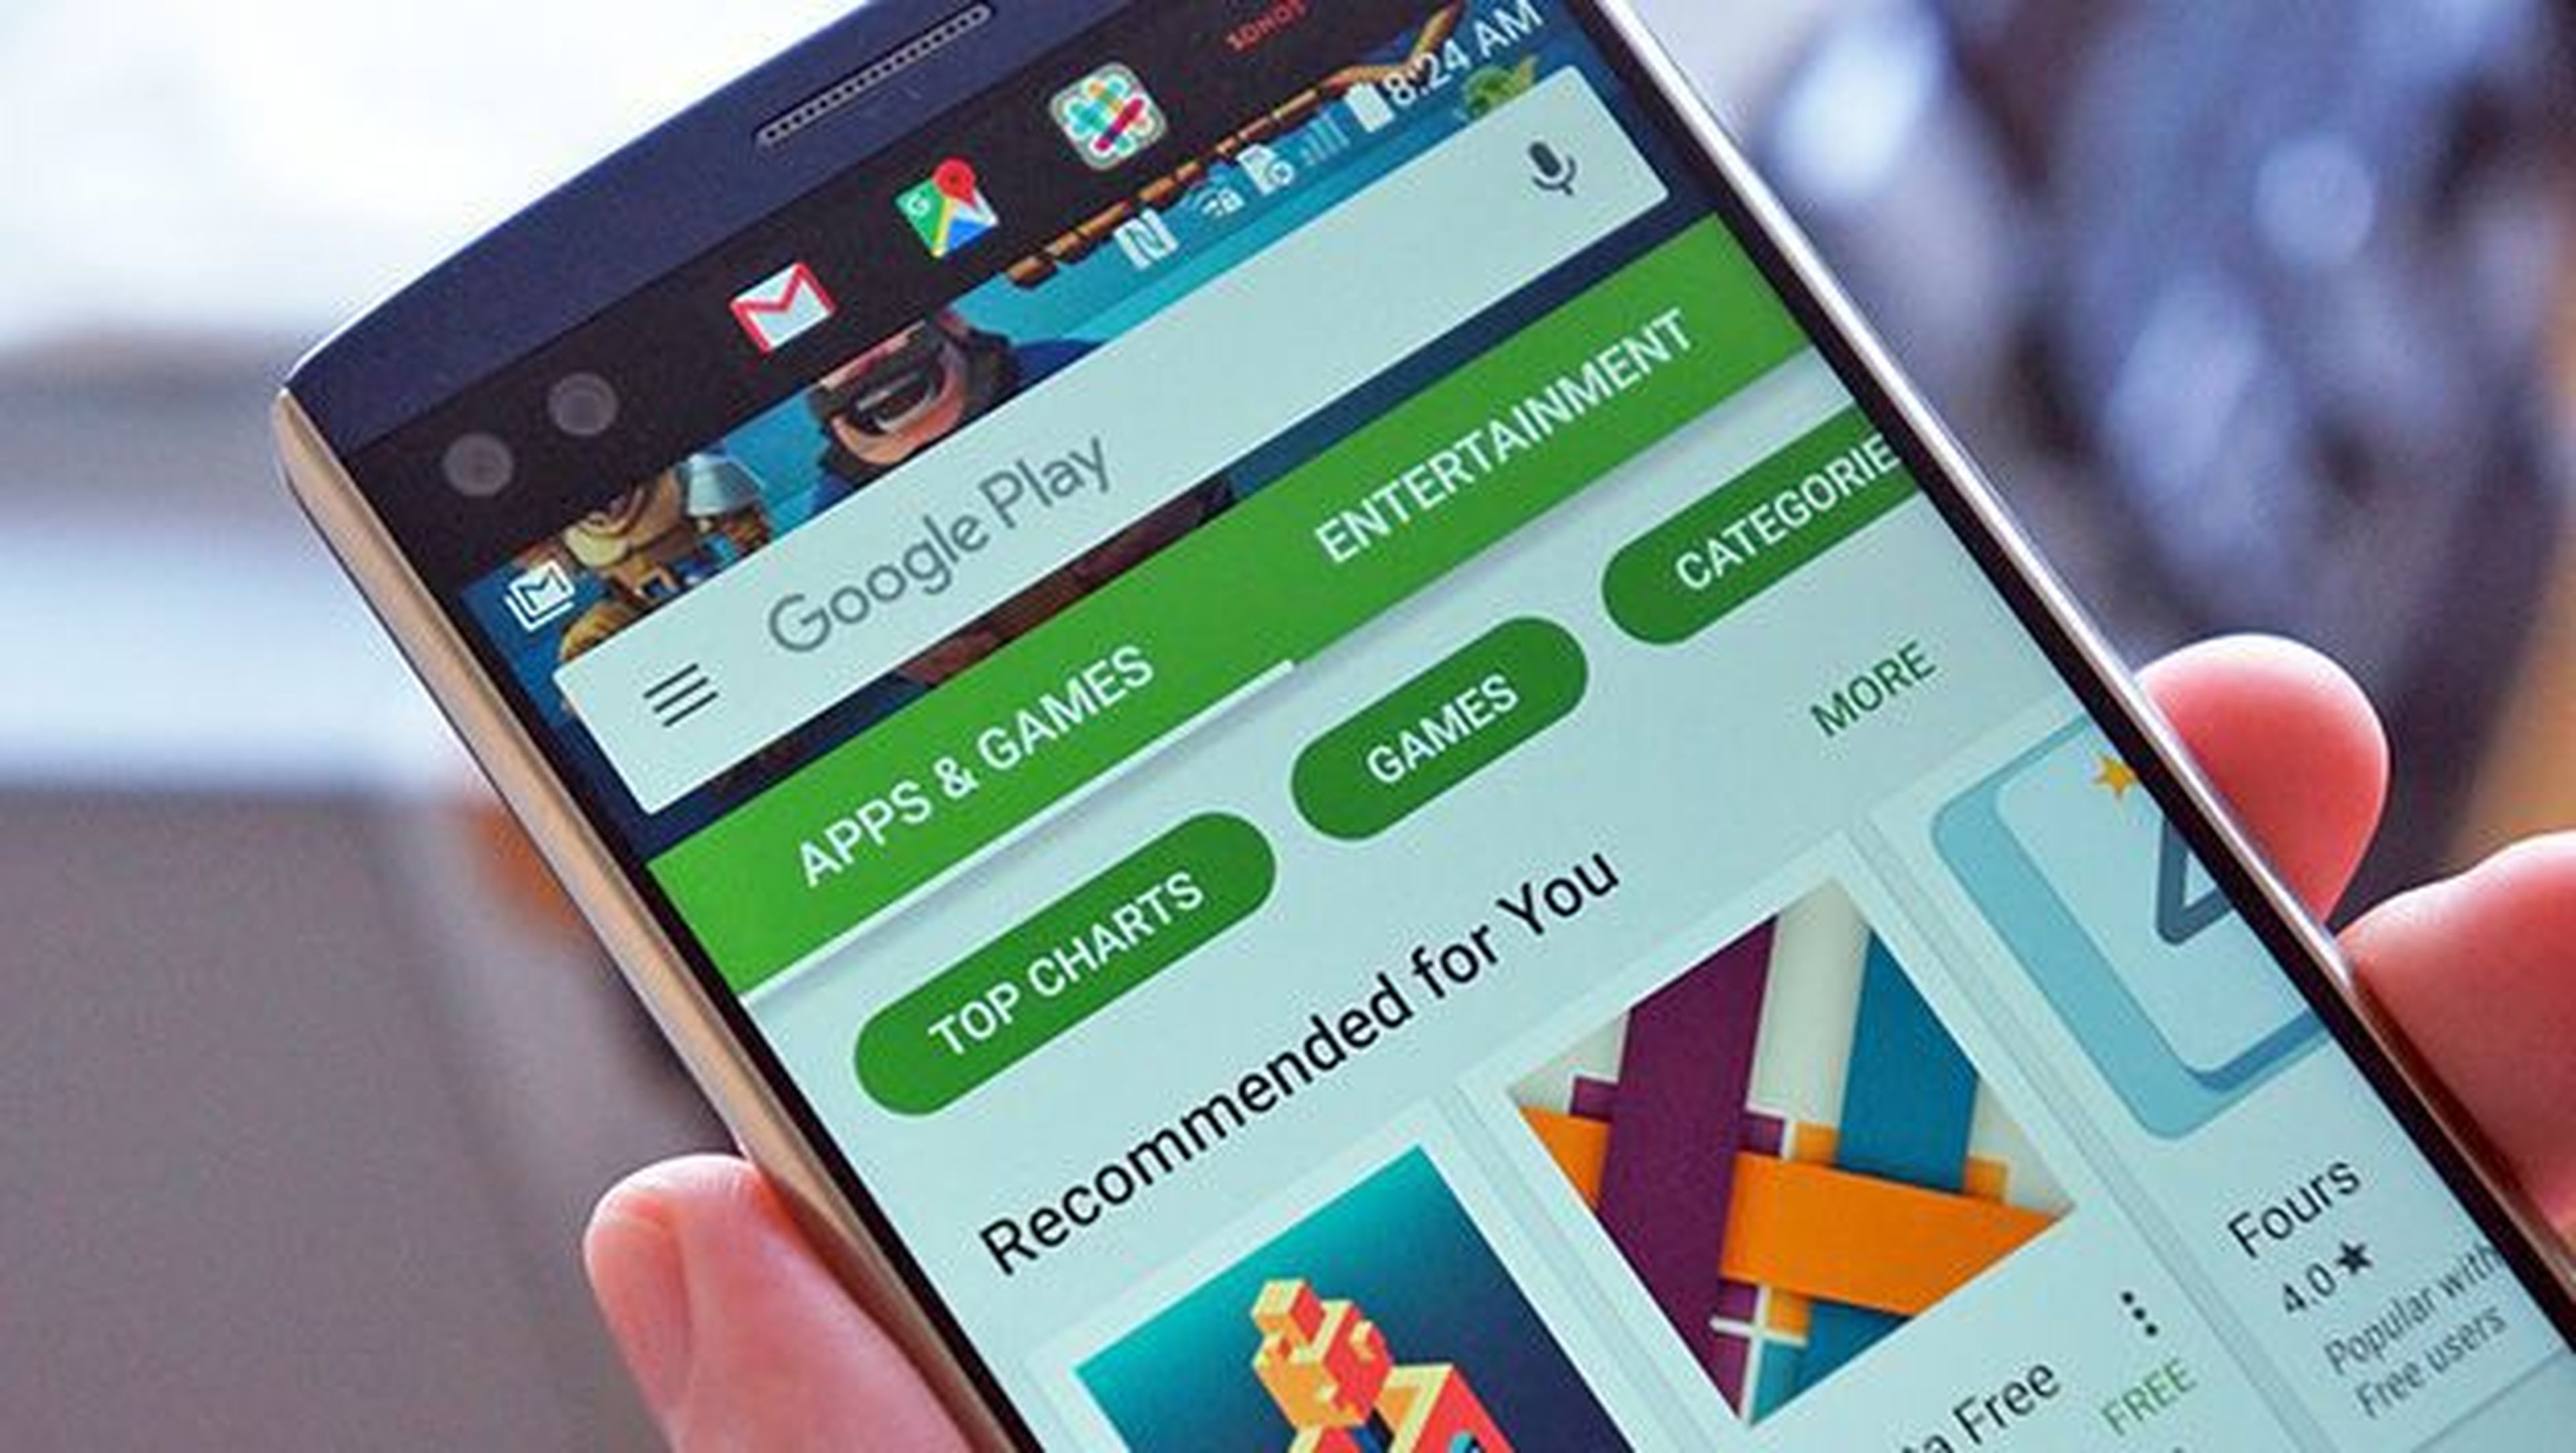 Google Play recompensas por virus en aplicaciones de terceros